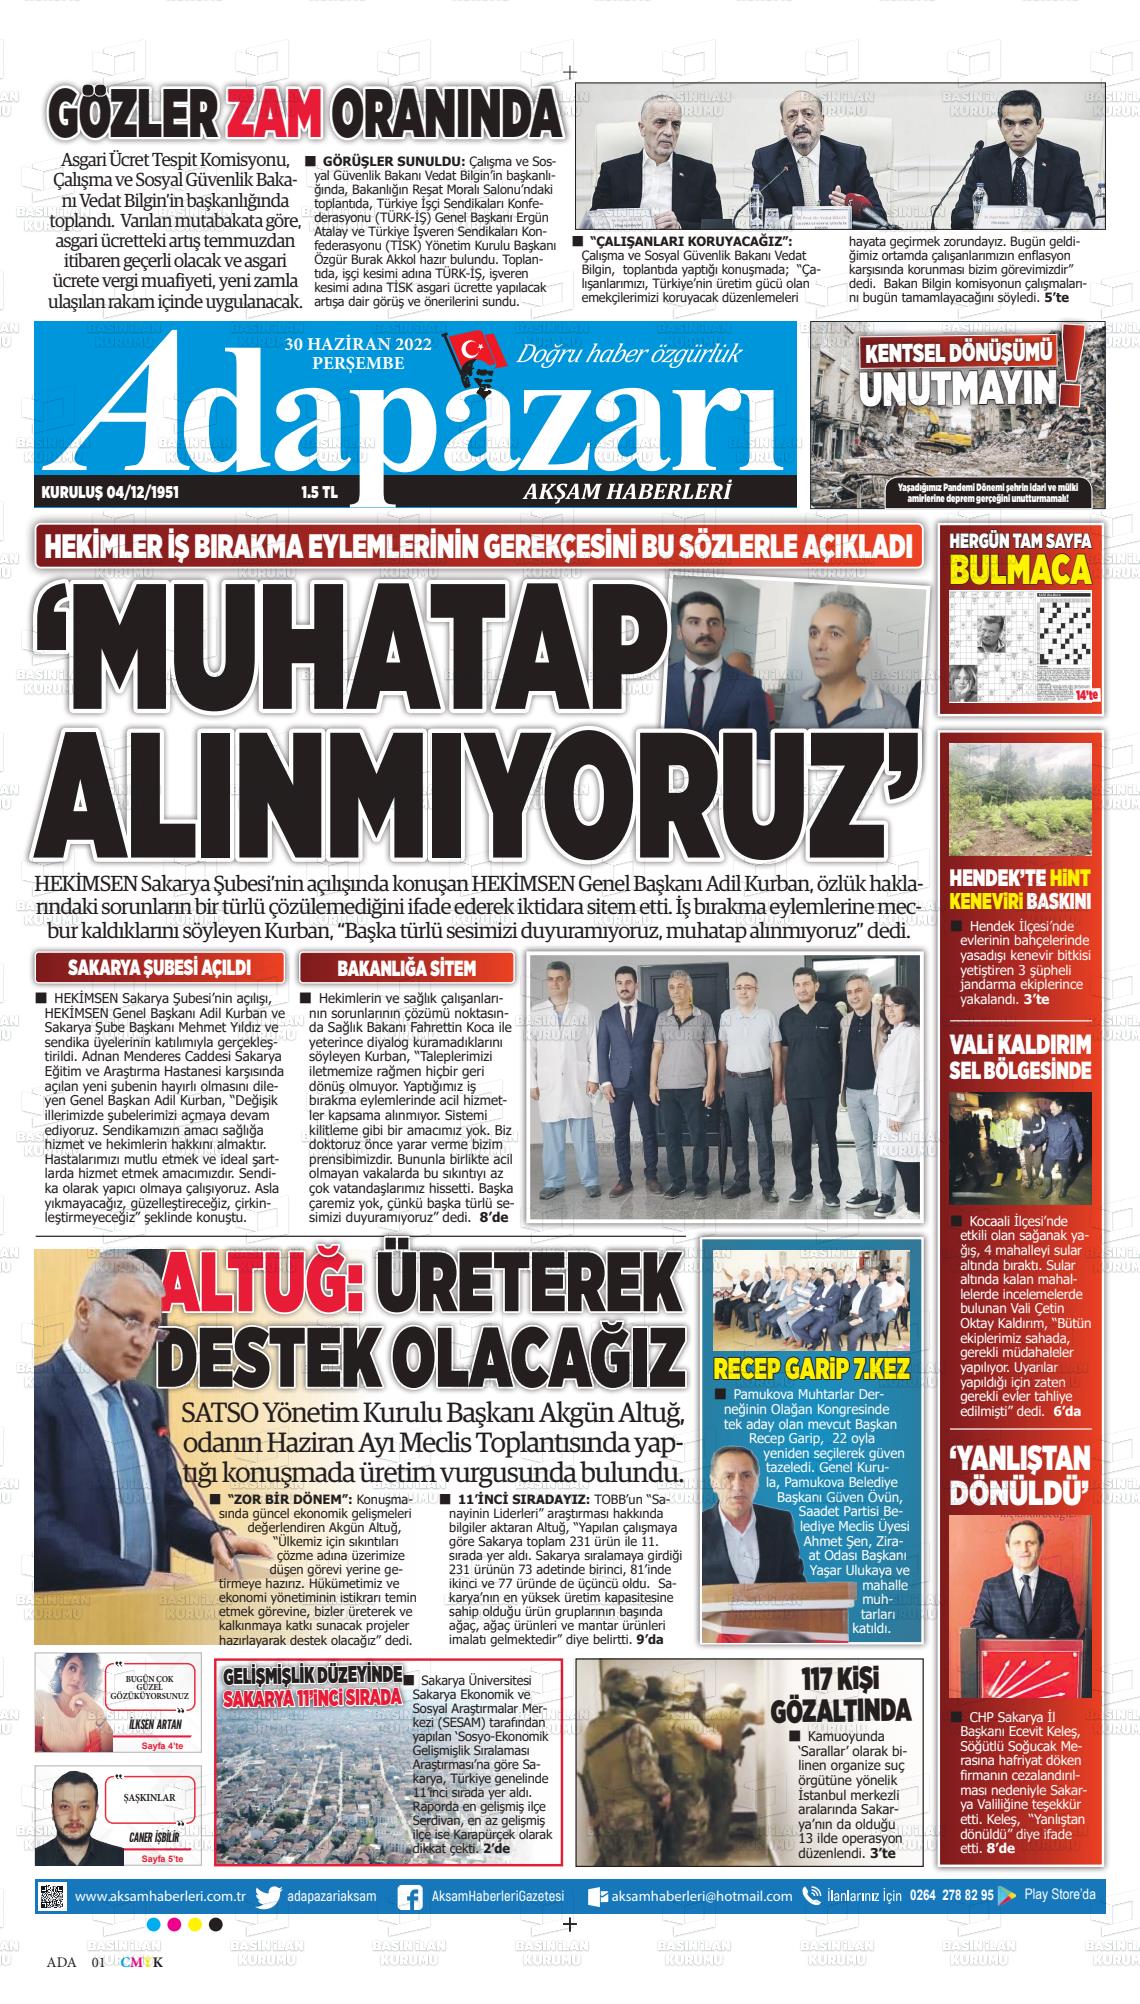 30 Haziran 2022 Adapazarı Akşam Haberleri Gazete Manşeti